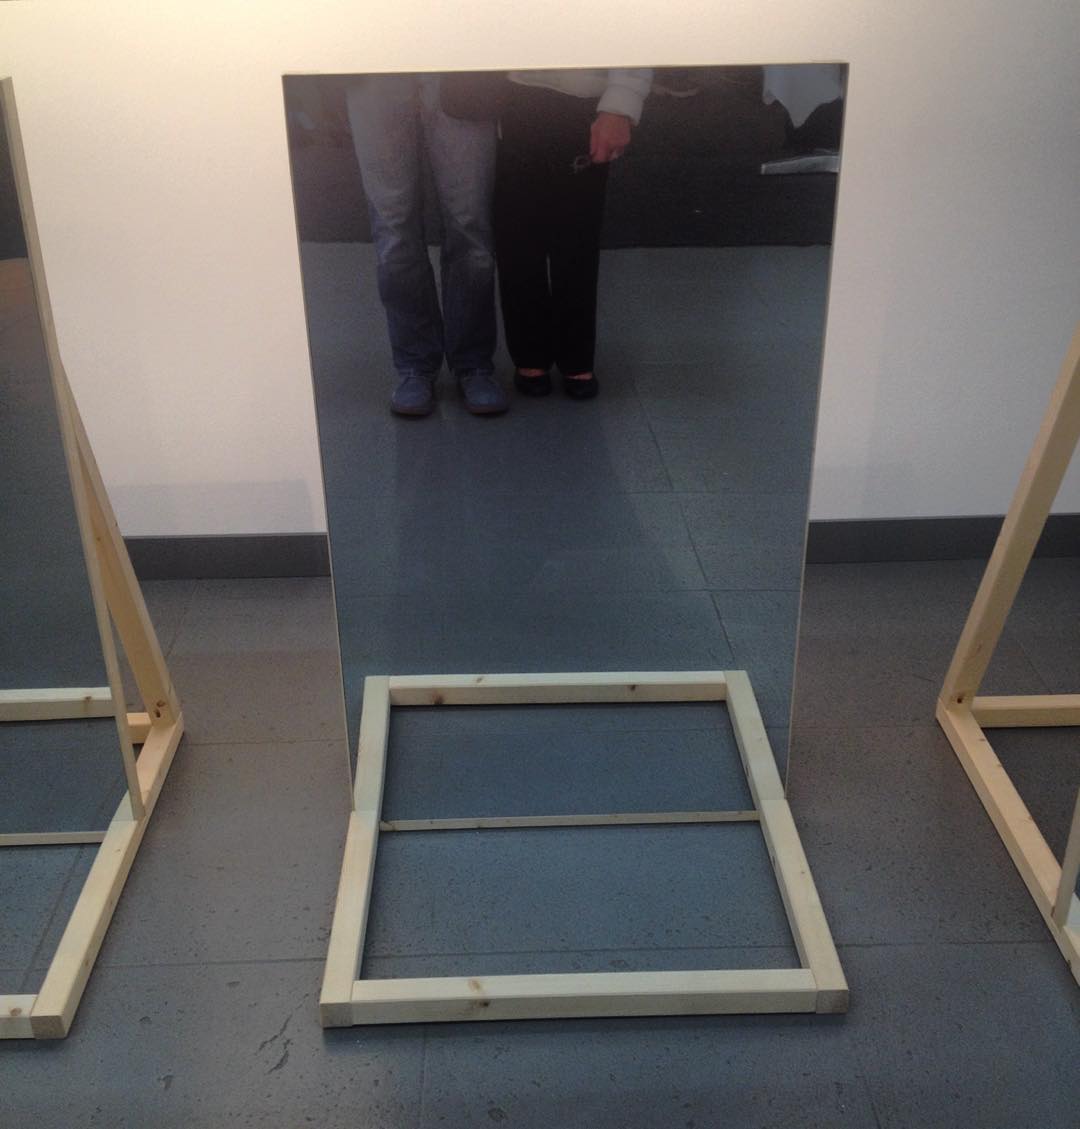 Na, und der Spiegel ist ein bisschen tief. #nrwforum #Düsseldorf #egoupdate